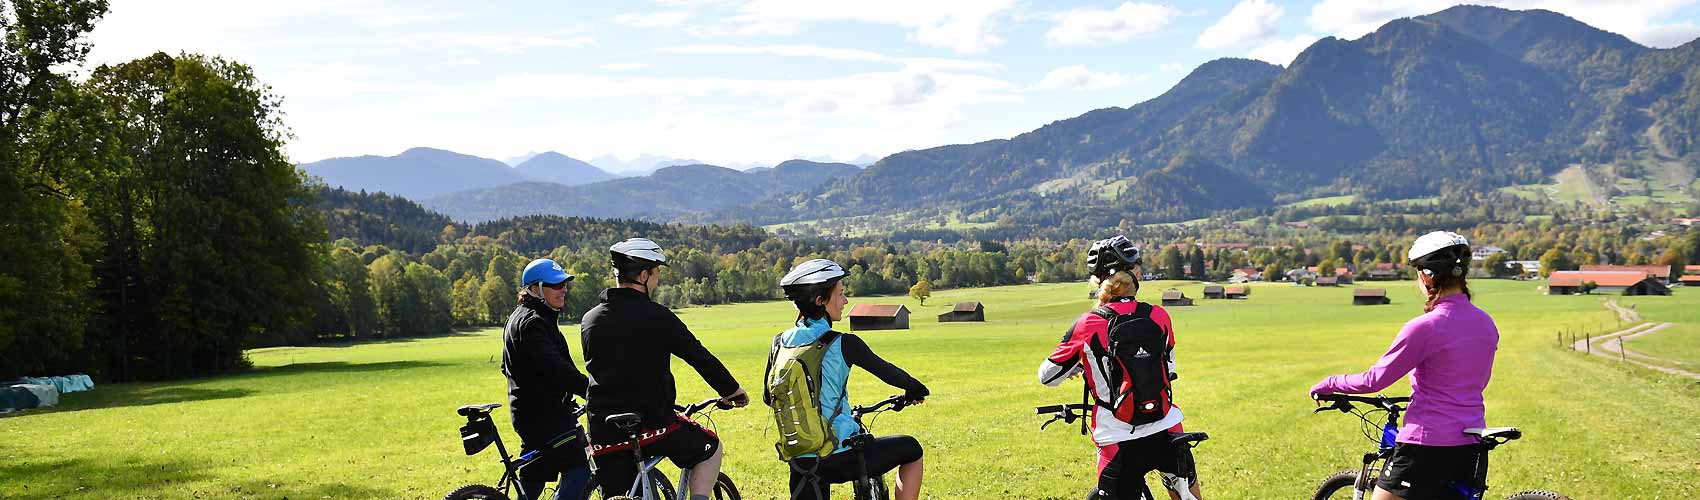 Biergarten Radeln, Fahrrad und Mountainbike Touren im Isarwinkel von Lenggries bis München für den Firmenausflug